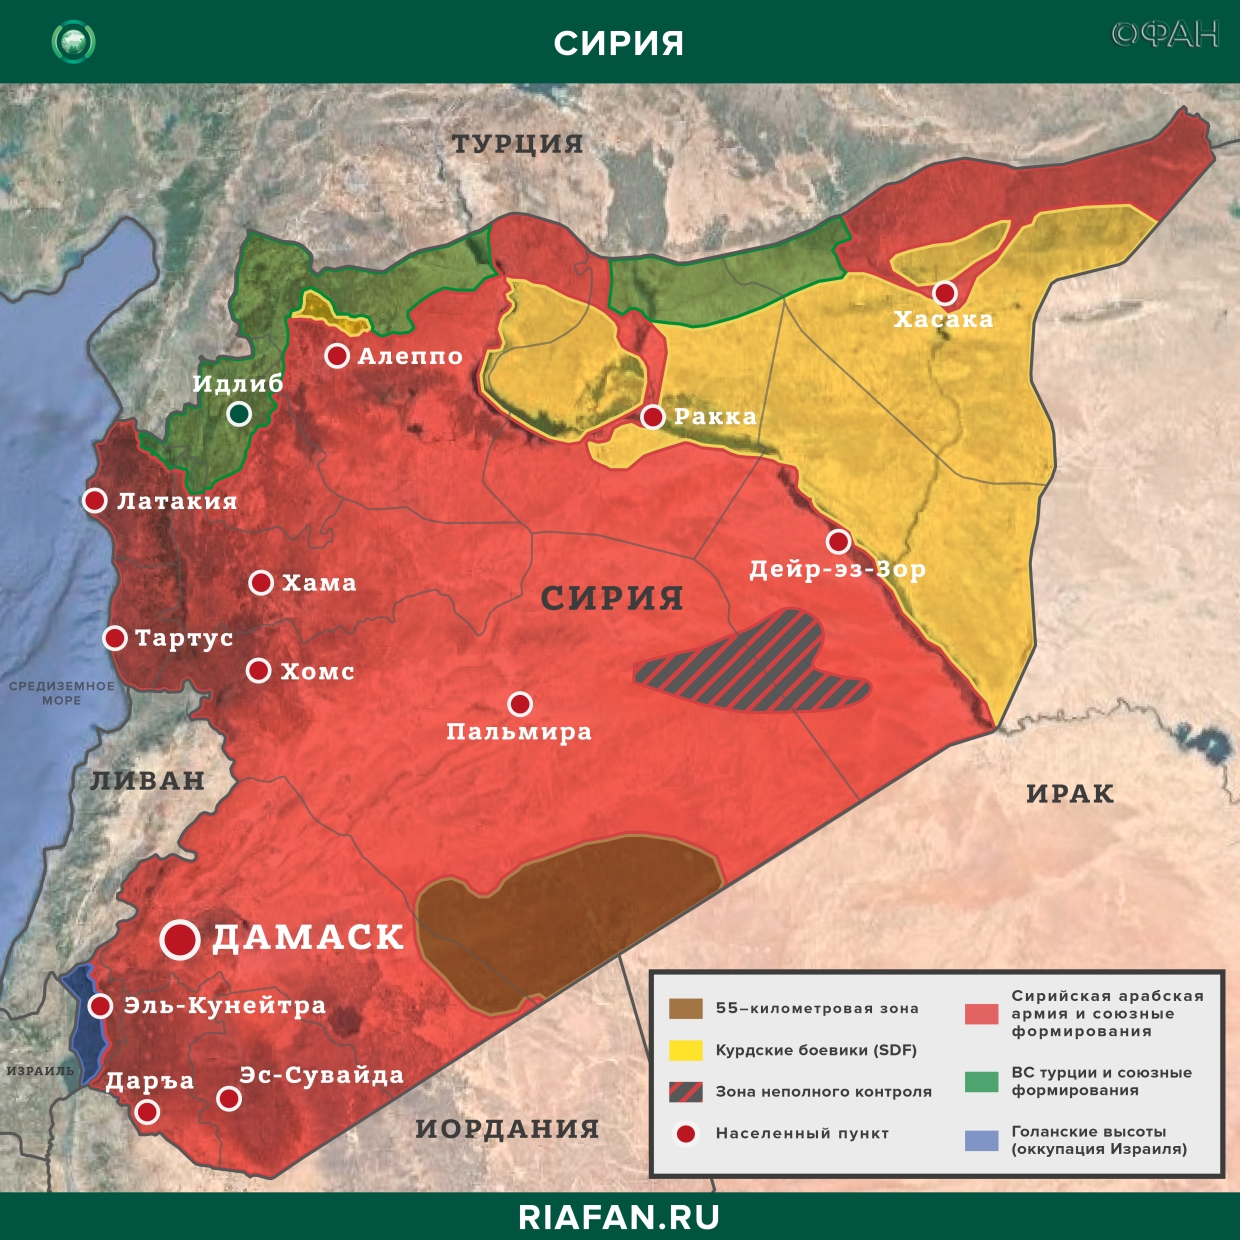 Nouvelles de Syrie 9 Mars 07.00: военные США оцепили Аль-Бусейру в Дейр-эз-Зоре, три гуманитарные акции РФ прошли в САР